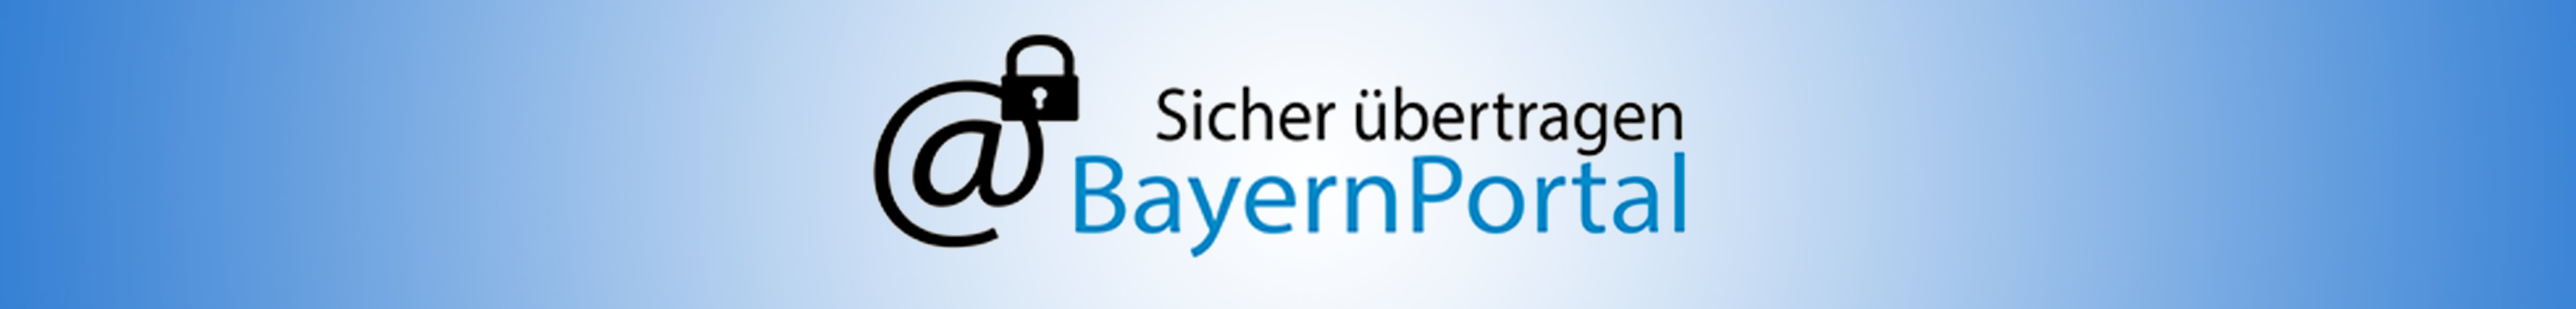 Logo Bayernportal: sicher übertragen